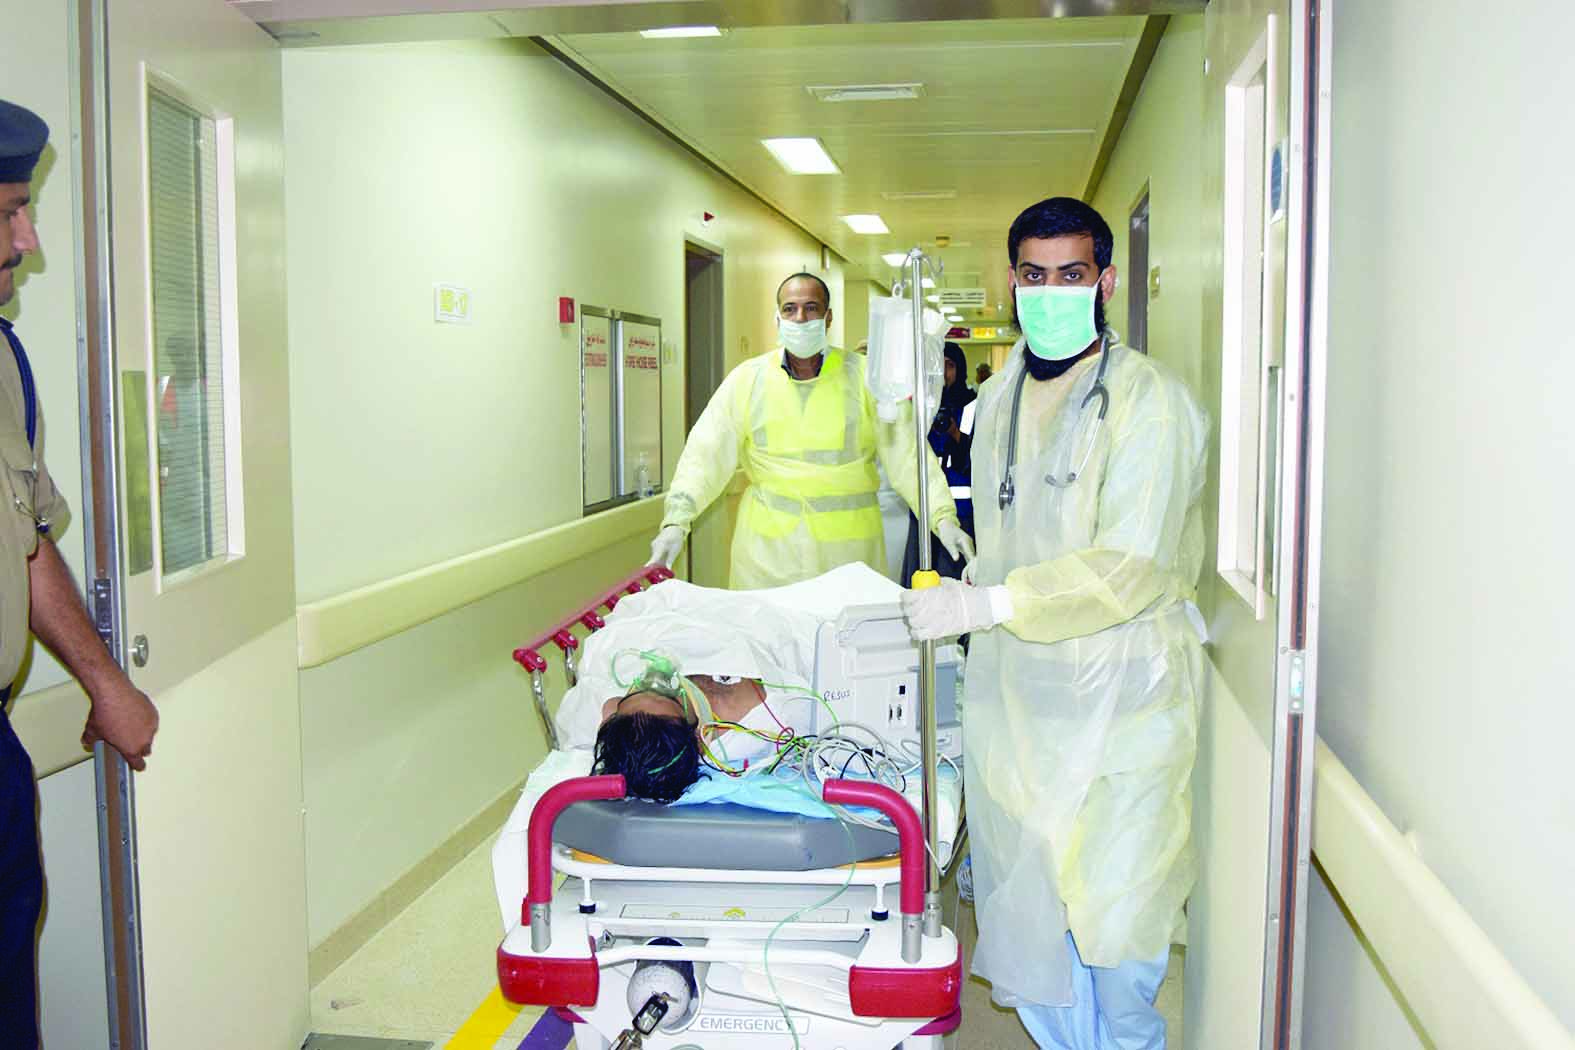 مستشفى نزوى ينظم تمريناً عملياً للتعامل مع الكوارث بالتعاون مع إدارة الدفاع المدني